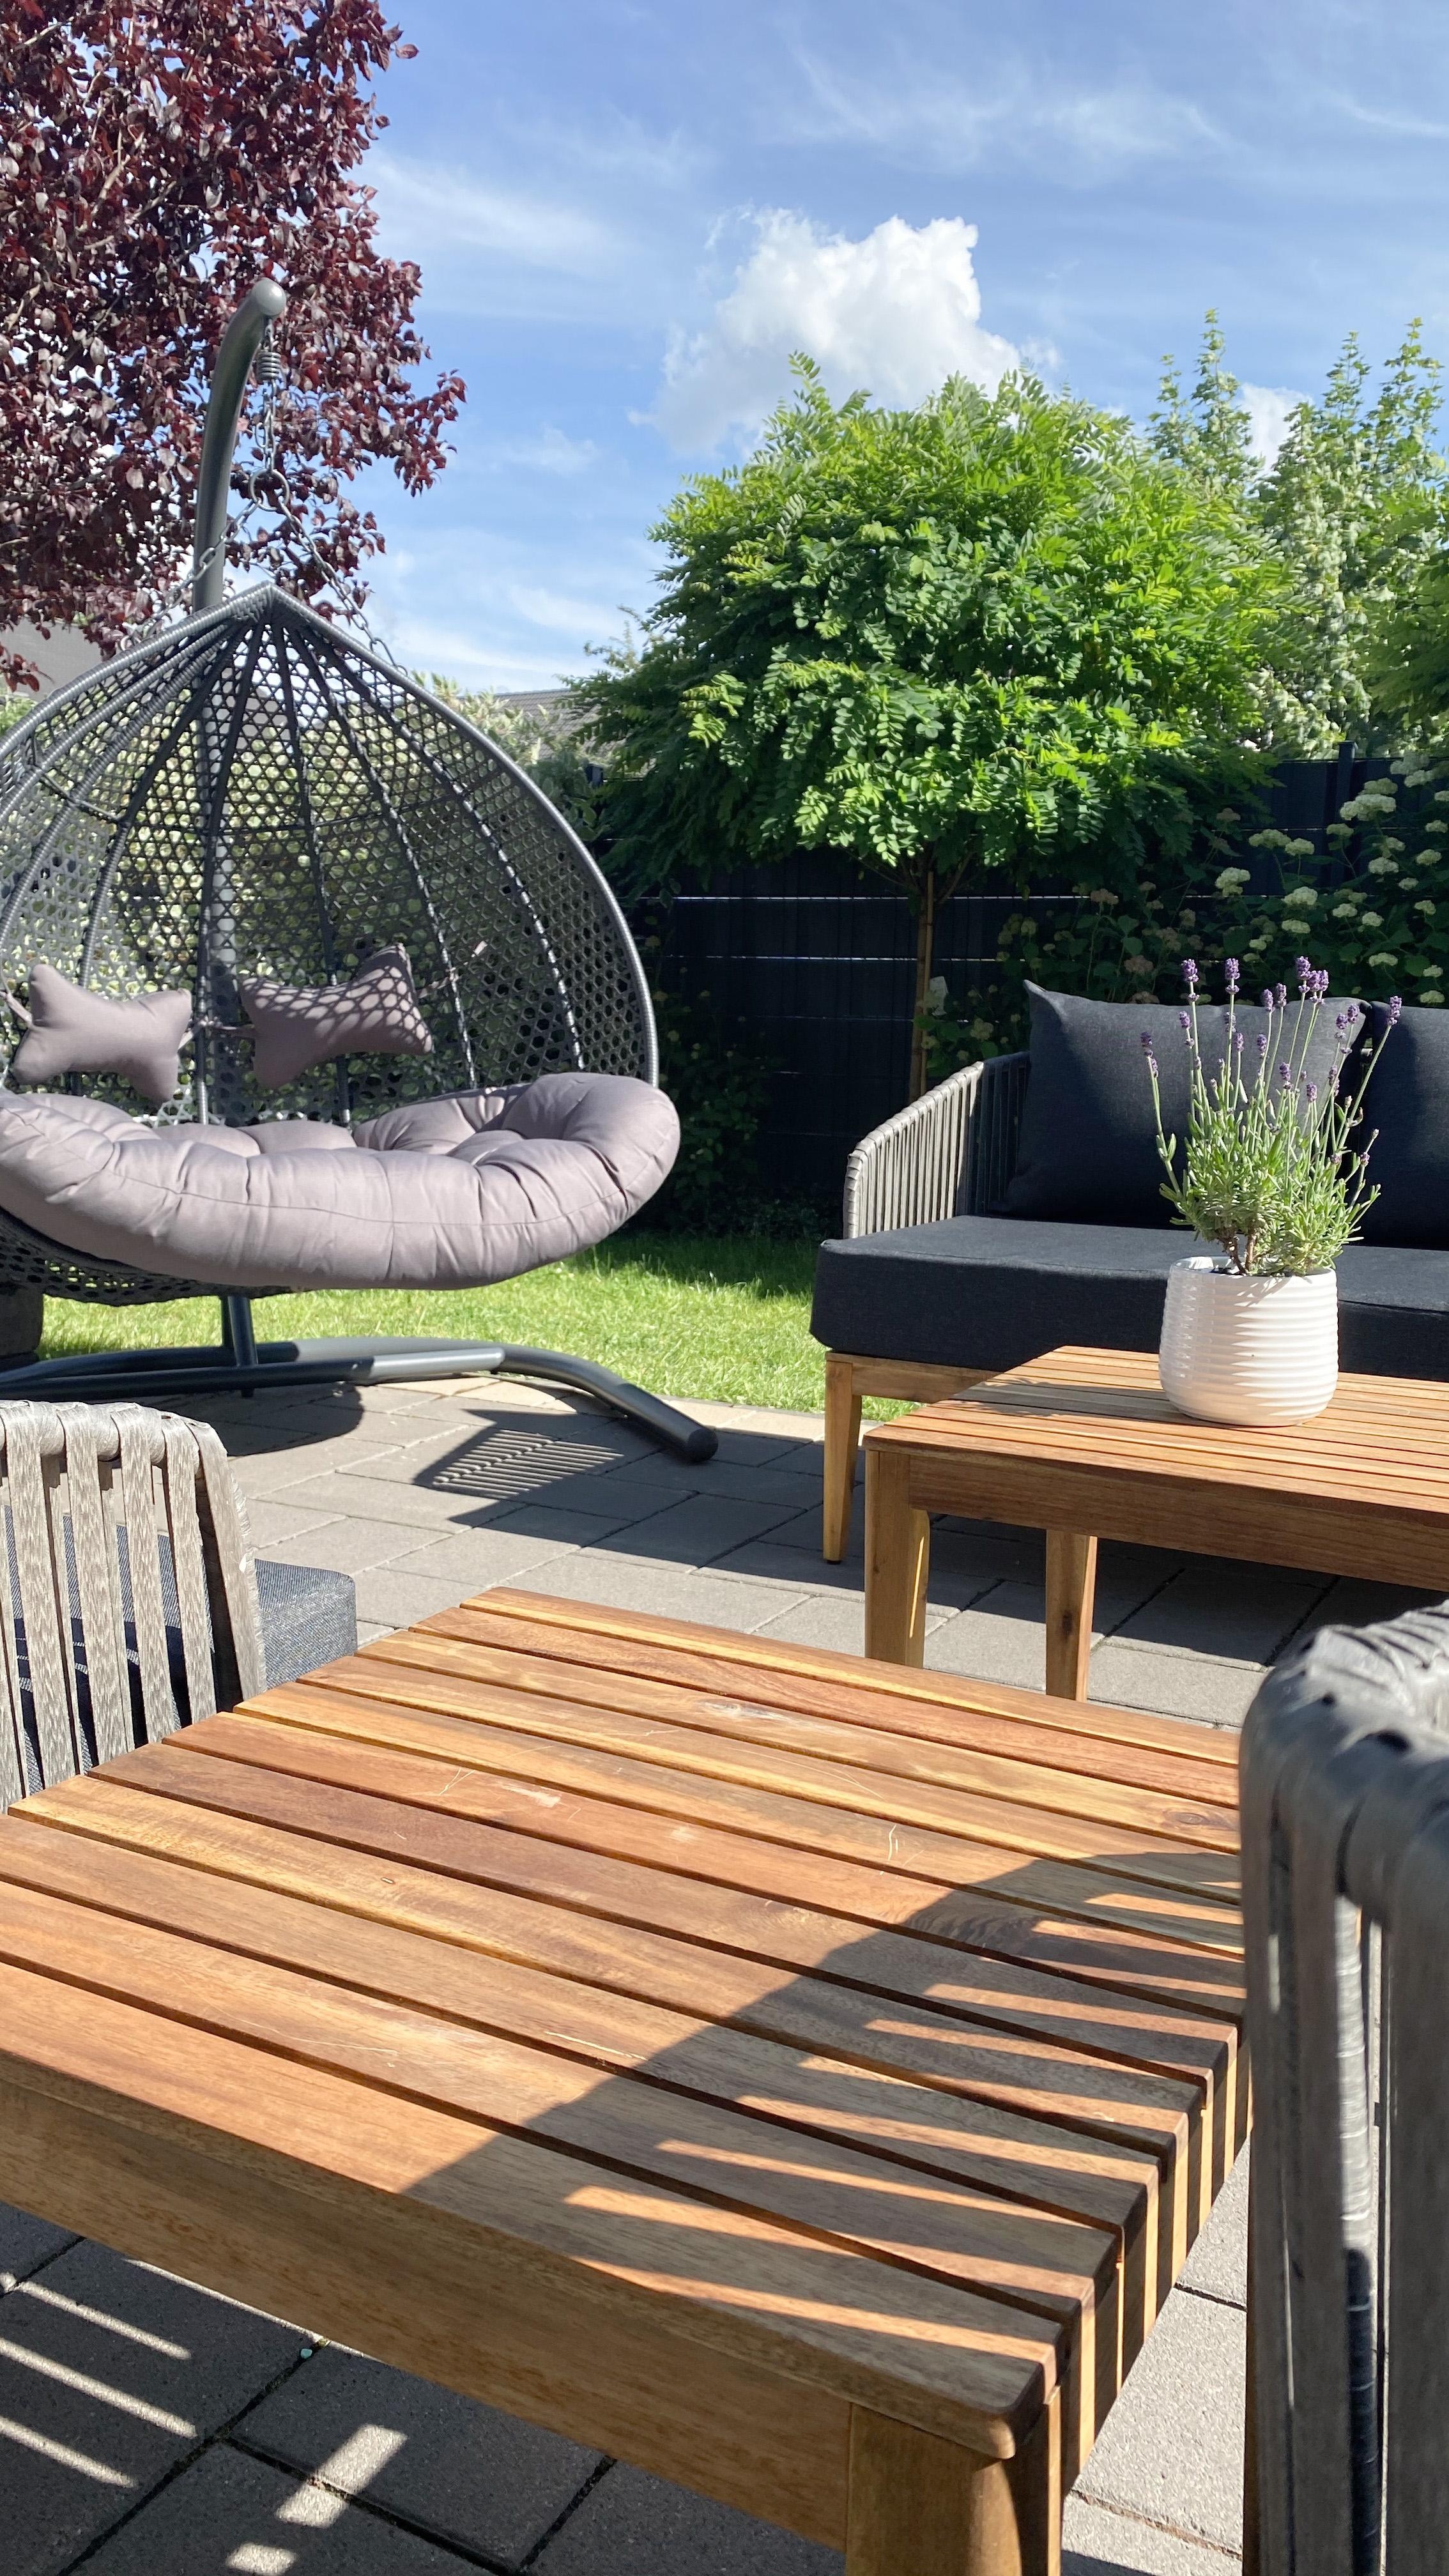 Neue #Gartenmöbel sind da, so #happy 
#gartenlounge #Feierabend #Wochenende #chillmodus #lavendel #cocktail #garten 